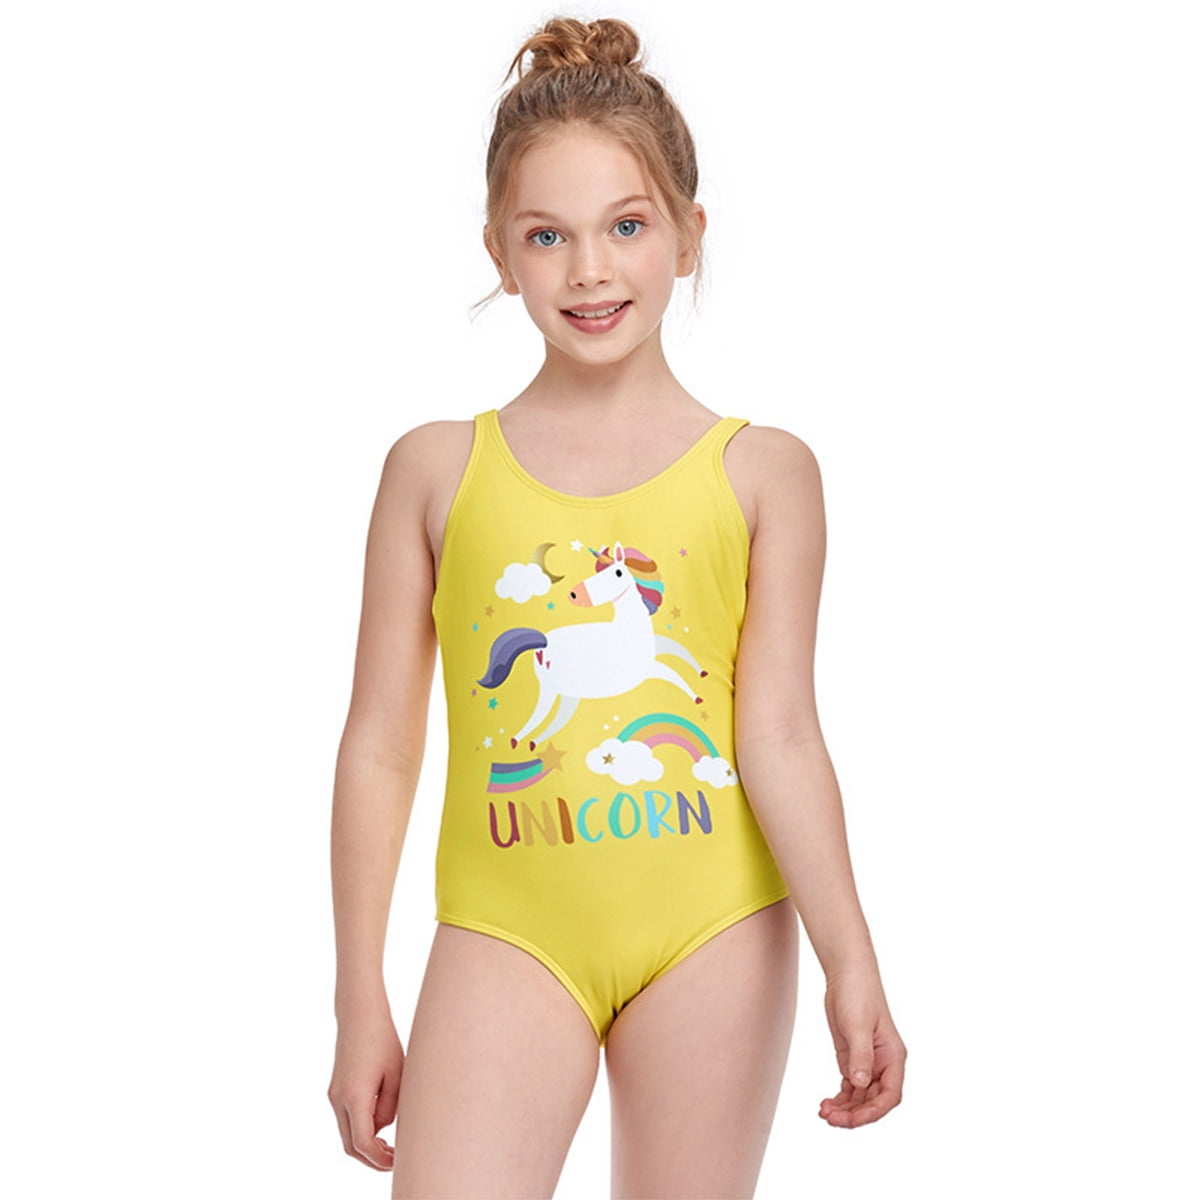 Kids Girls Unicorn Mermaid Swimming Costume Swimsuit Swimwear Bathing Suit Beach 